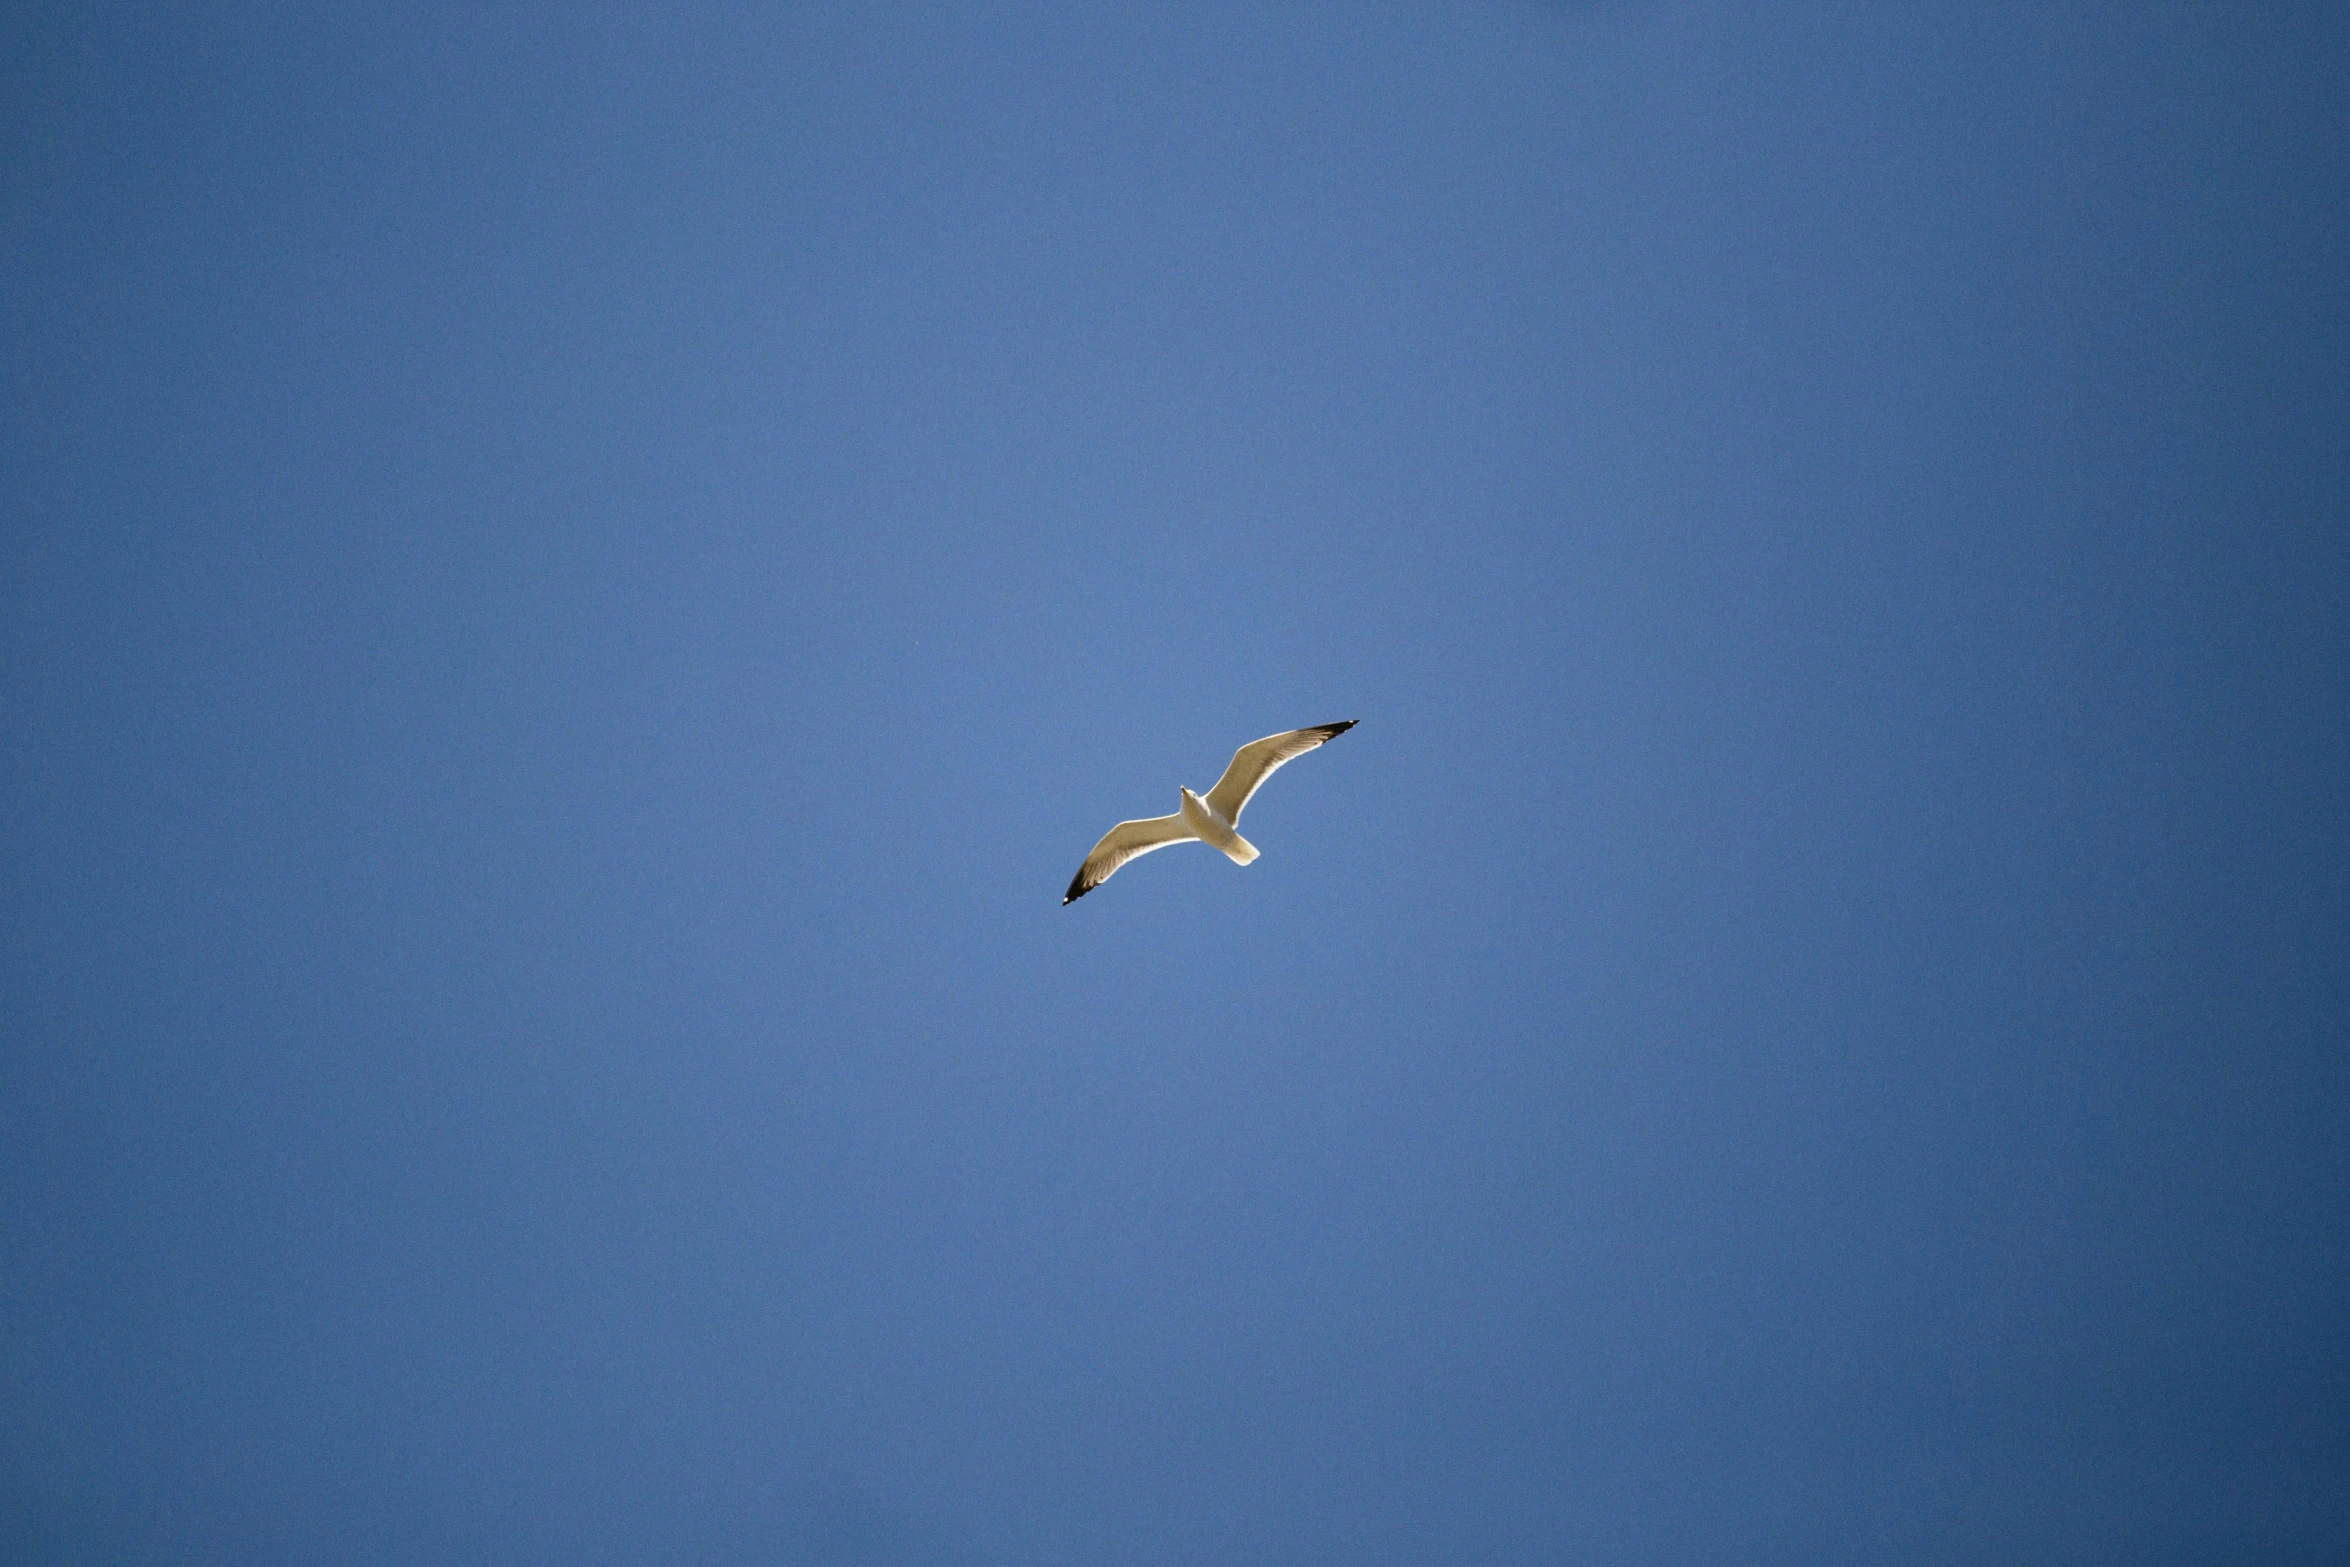 a bird flies through the sky on a clear day